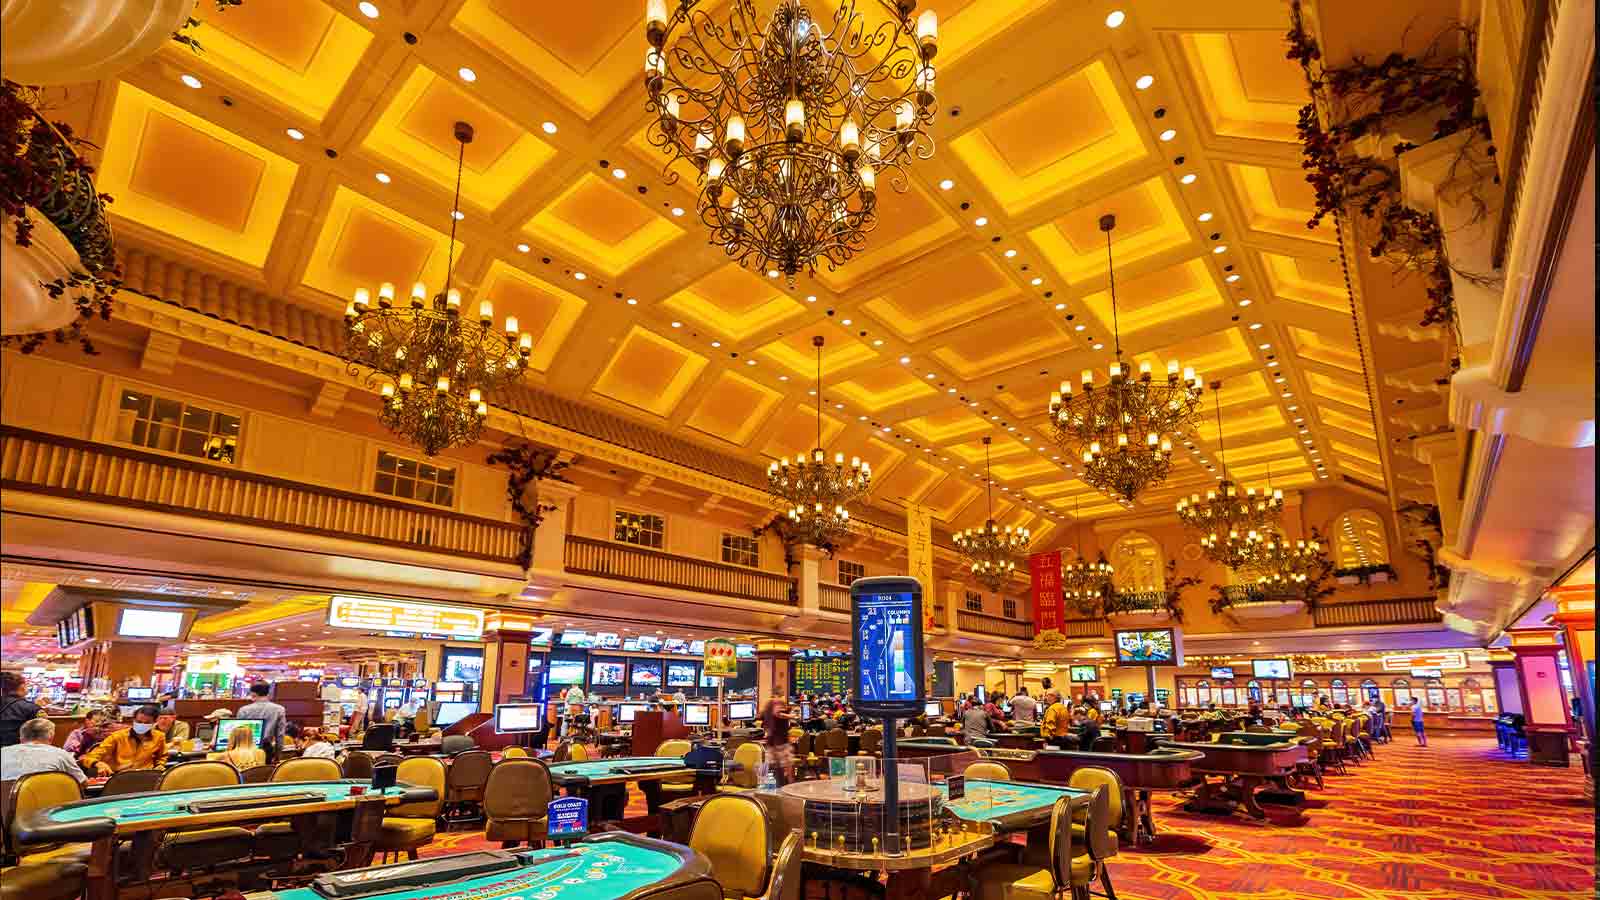 The Impact of Casino Art